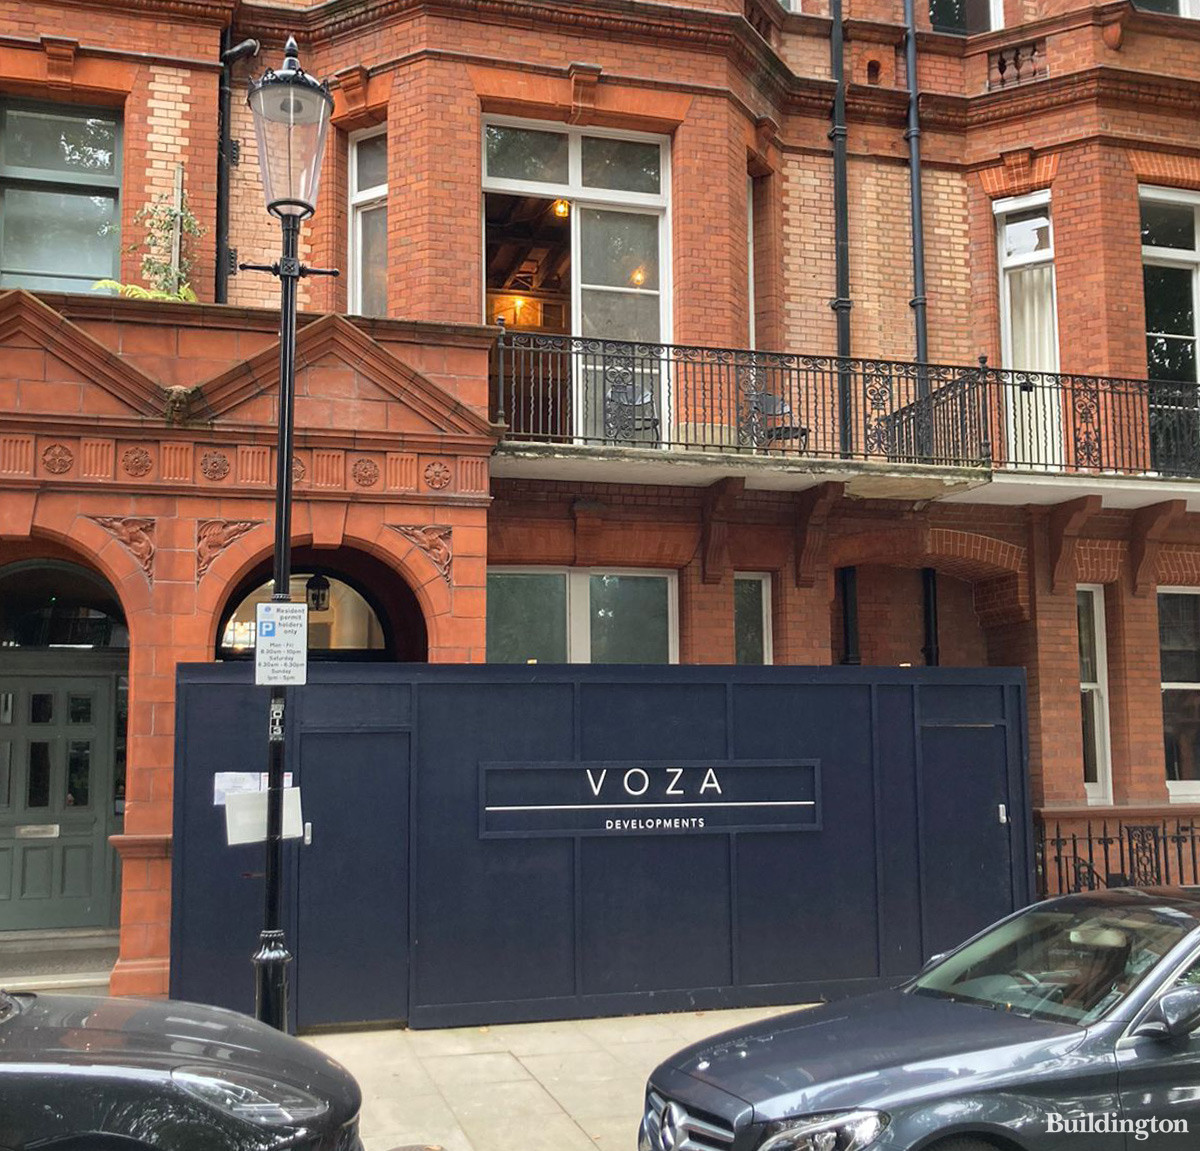 VOZA Developments at 55 Sloane Gardens in Chelsea, London SW1.